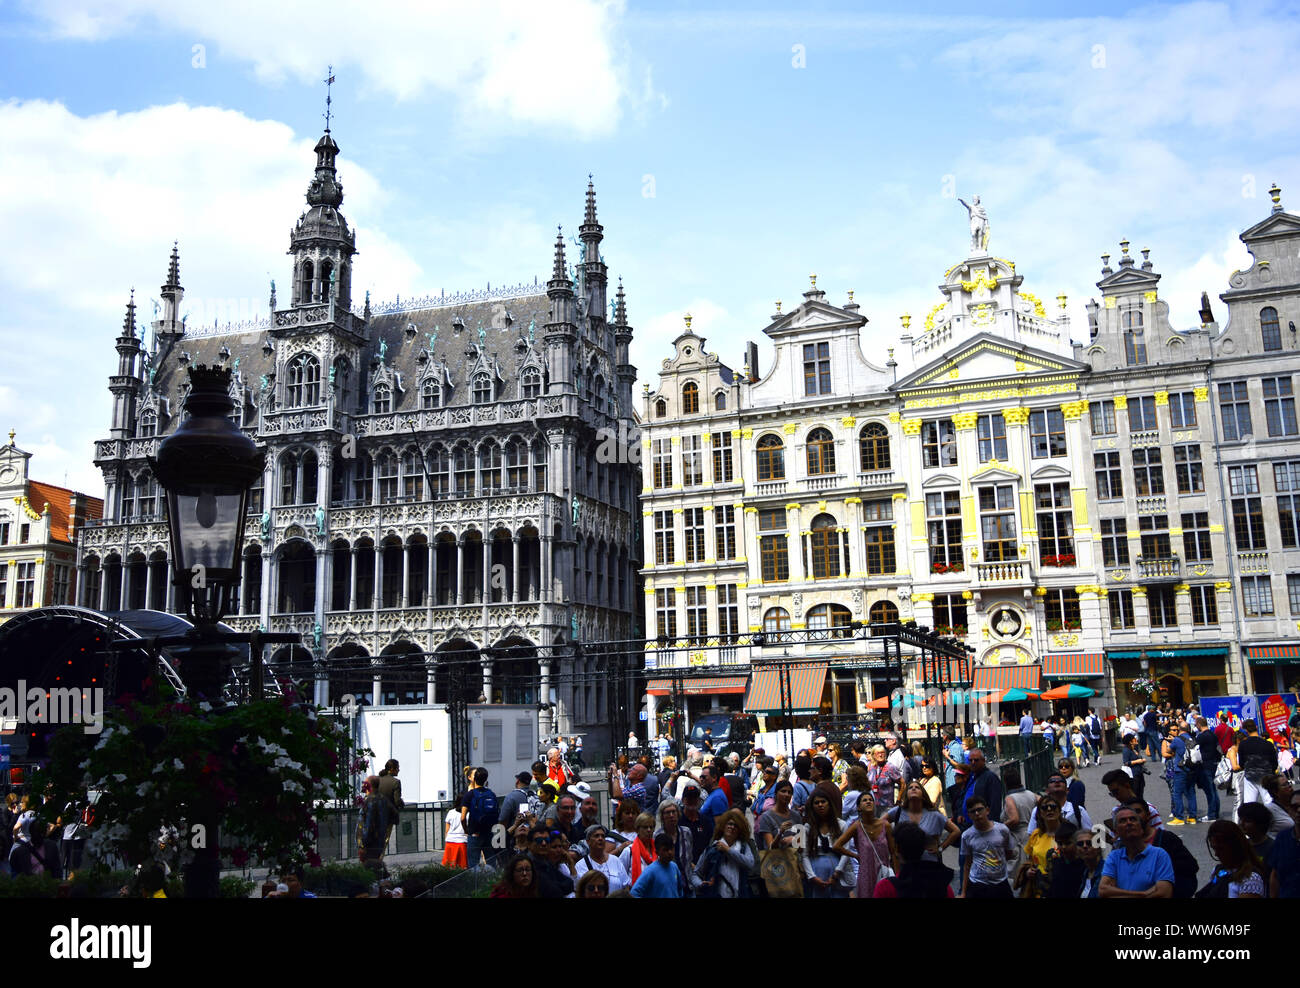 Bruxelles / Belgique - Juillet 9, 2019 : foule de touristes dans le centre de Bruxelles, Grand Place. Préparation de l'événement, mise en scène. Banque D'Images